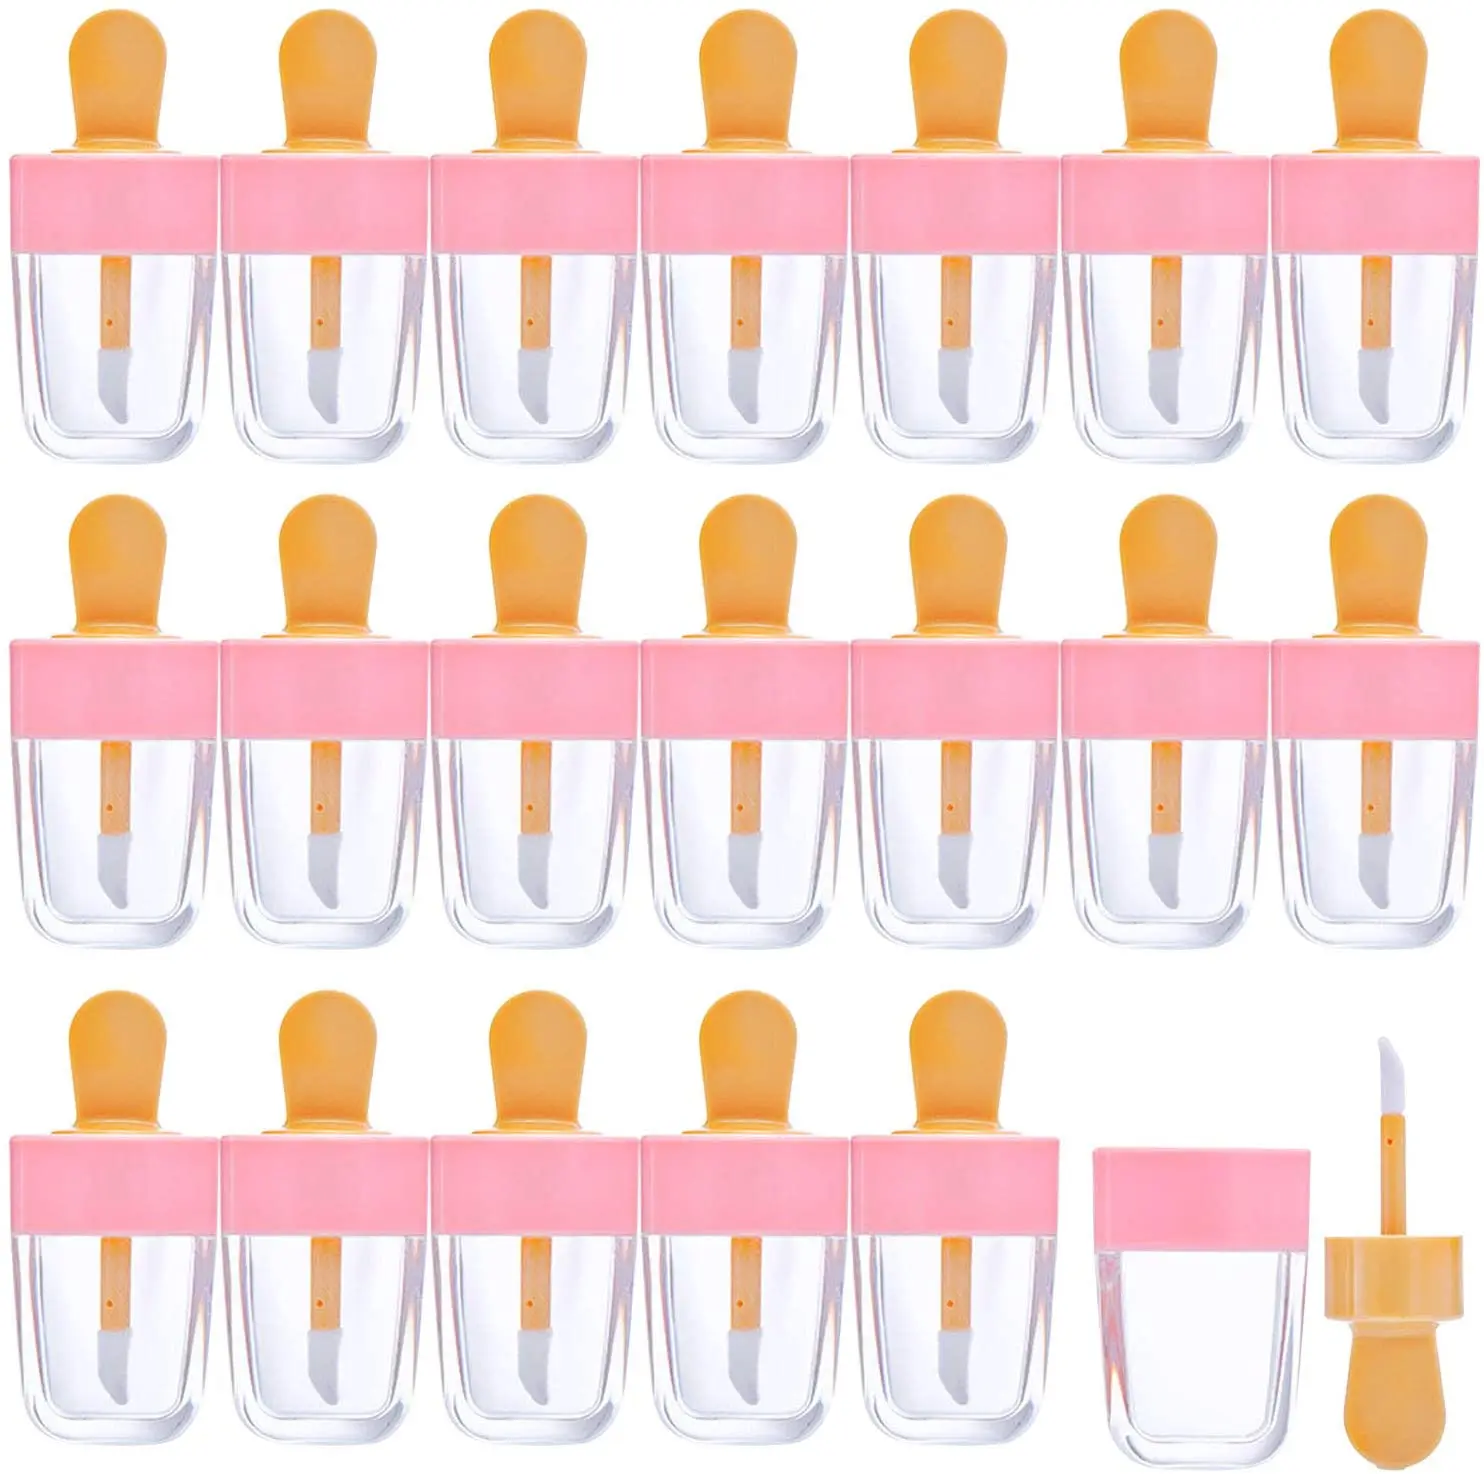 Tubos vacíos de brillo de labios, contenedores de brillo de labios con forma de helado rosa, botellas de tubo de bálsamo labial rellenables para cosméticos DIY, 20 Uds.